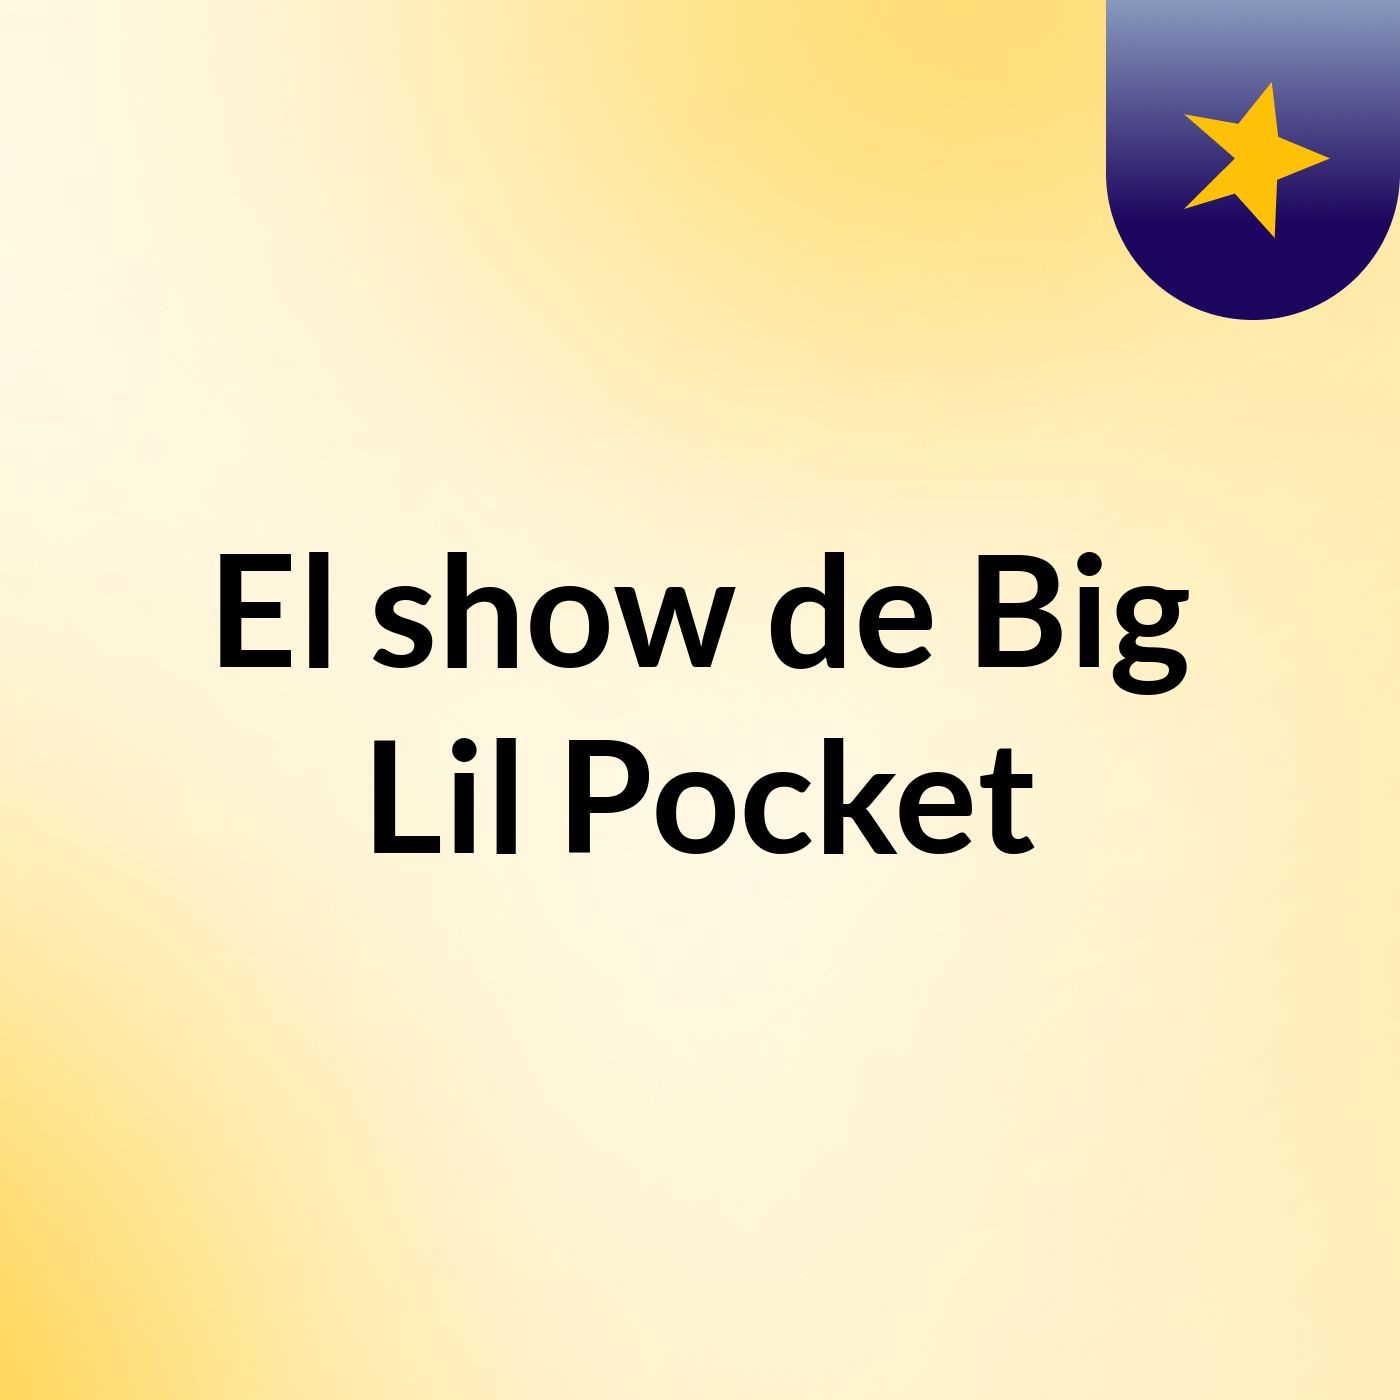 El show de Big Lil Pocket